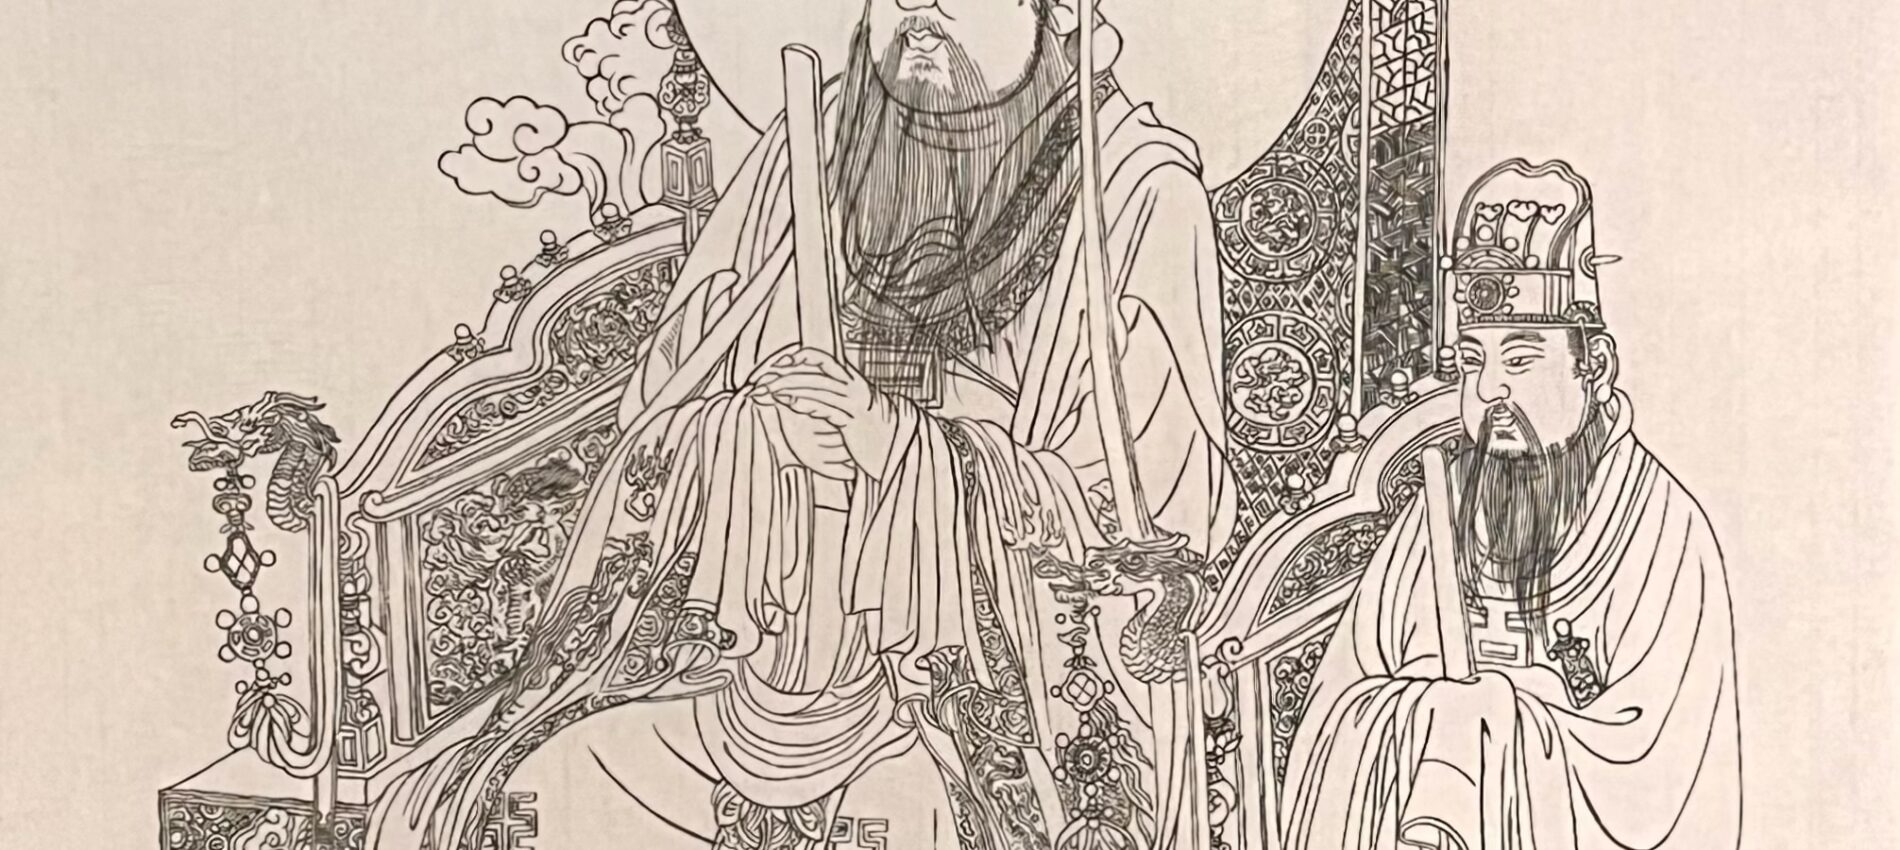 The Jade Emperor